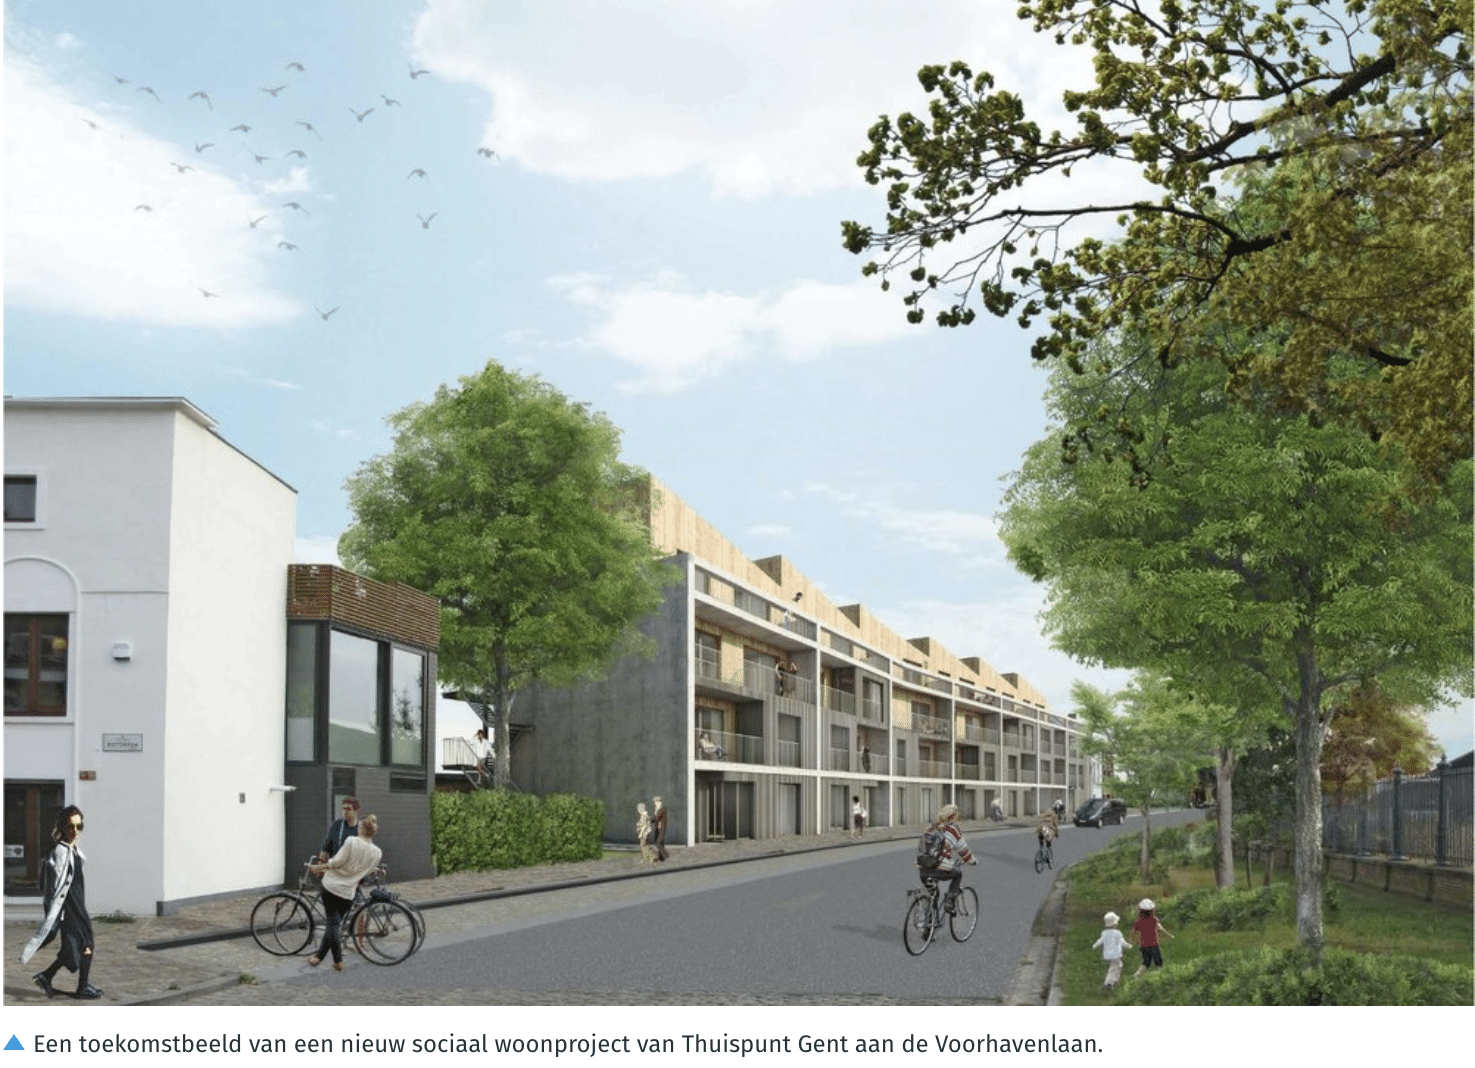 Gent schakelt versnelling hoger en mikt op 20% sociale woningen tegen 2050